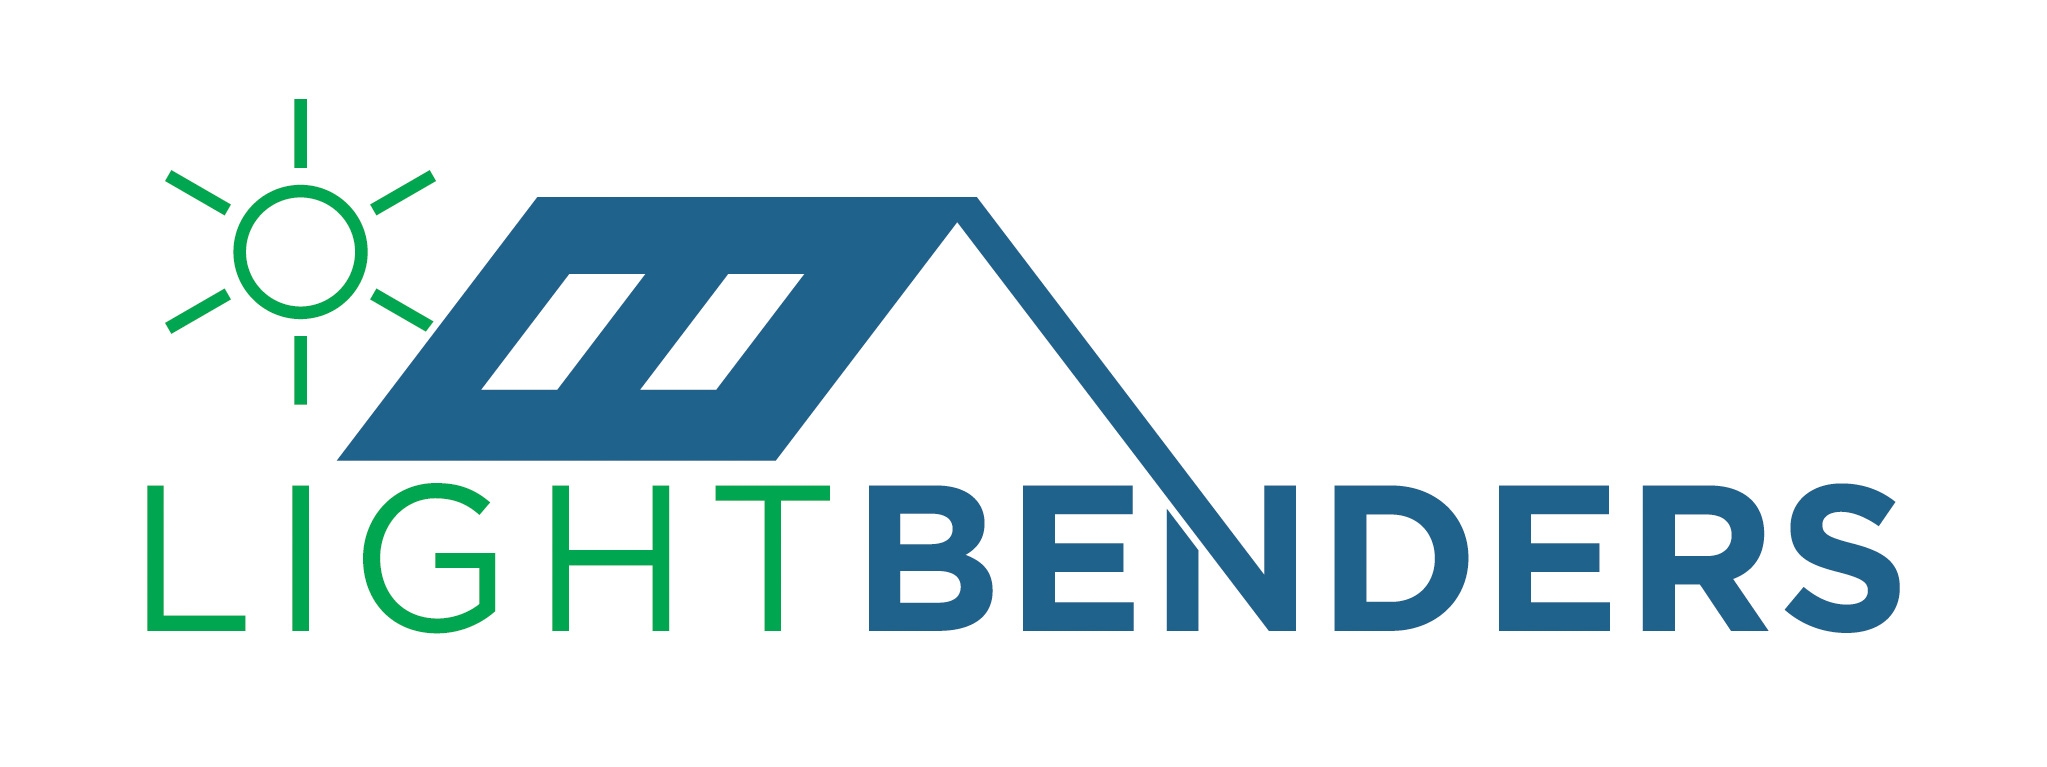 Light Benders Beaverton logo